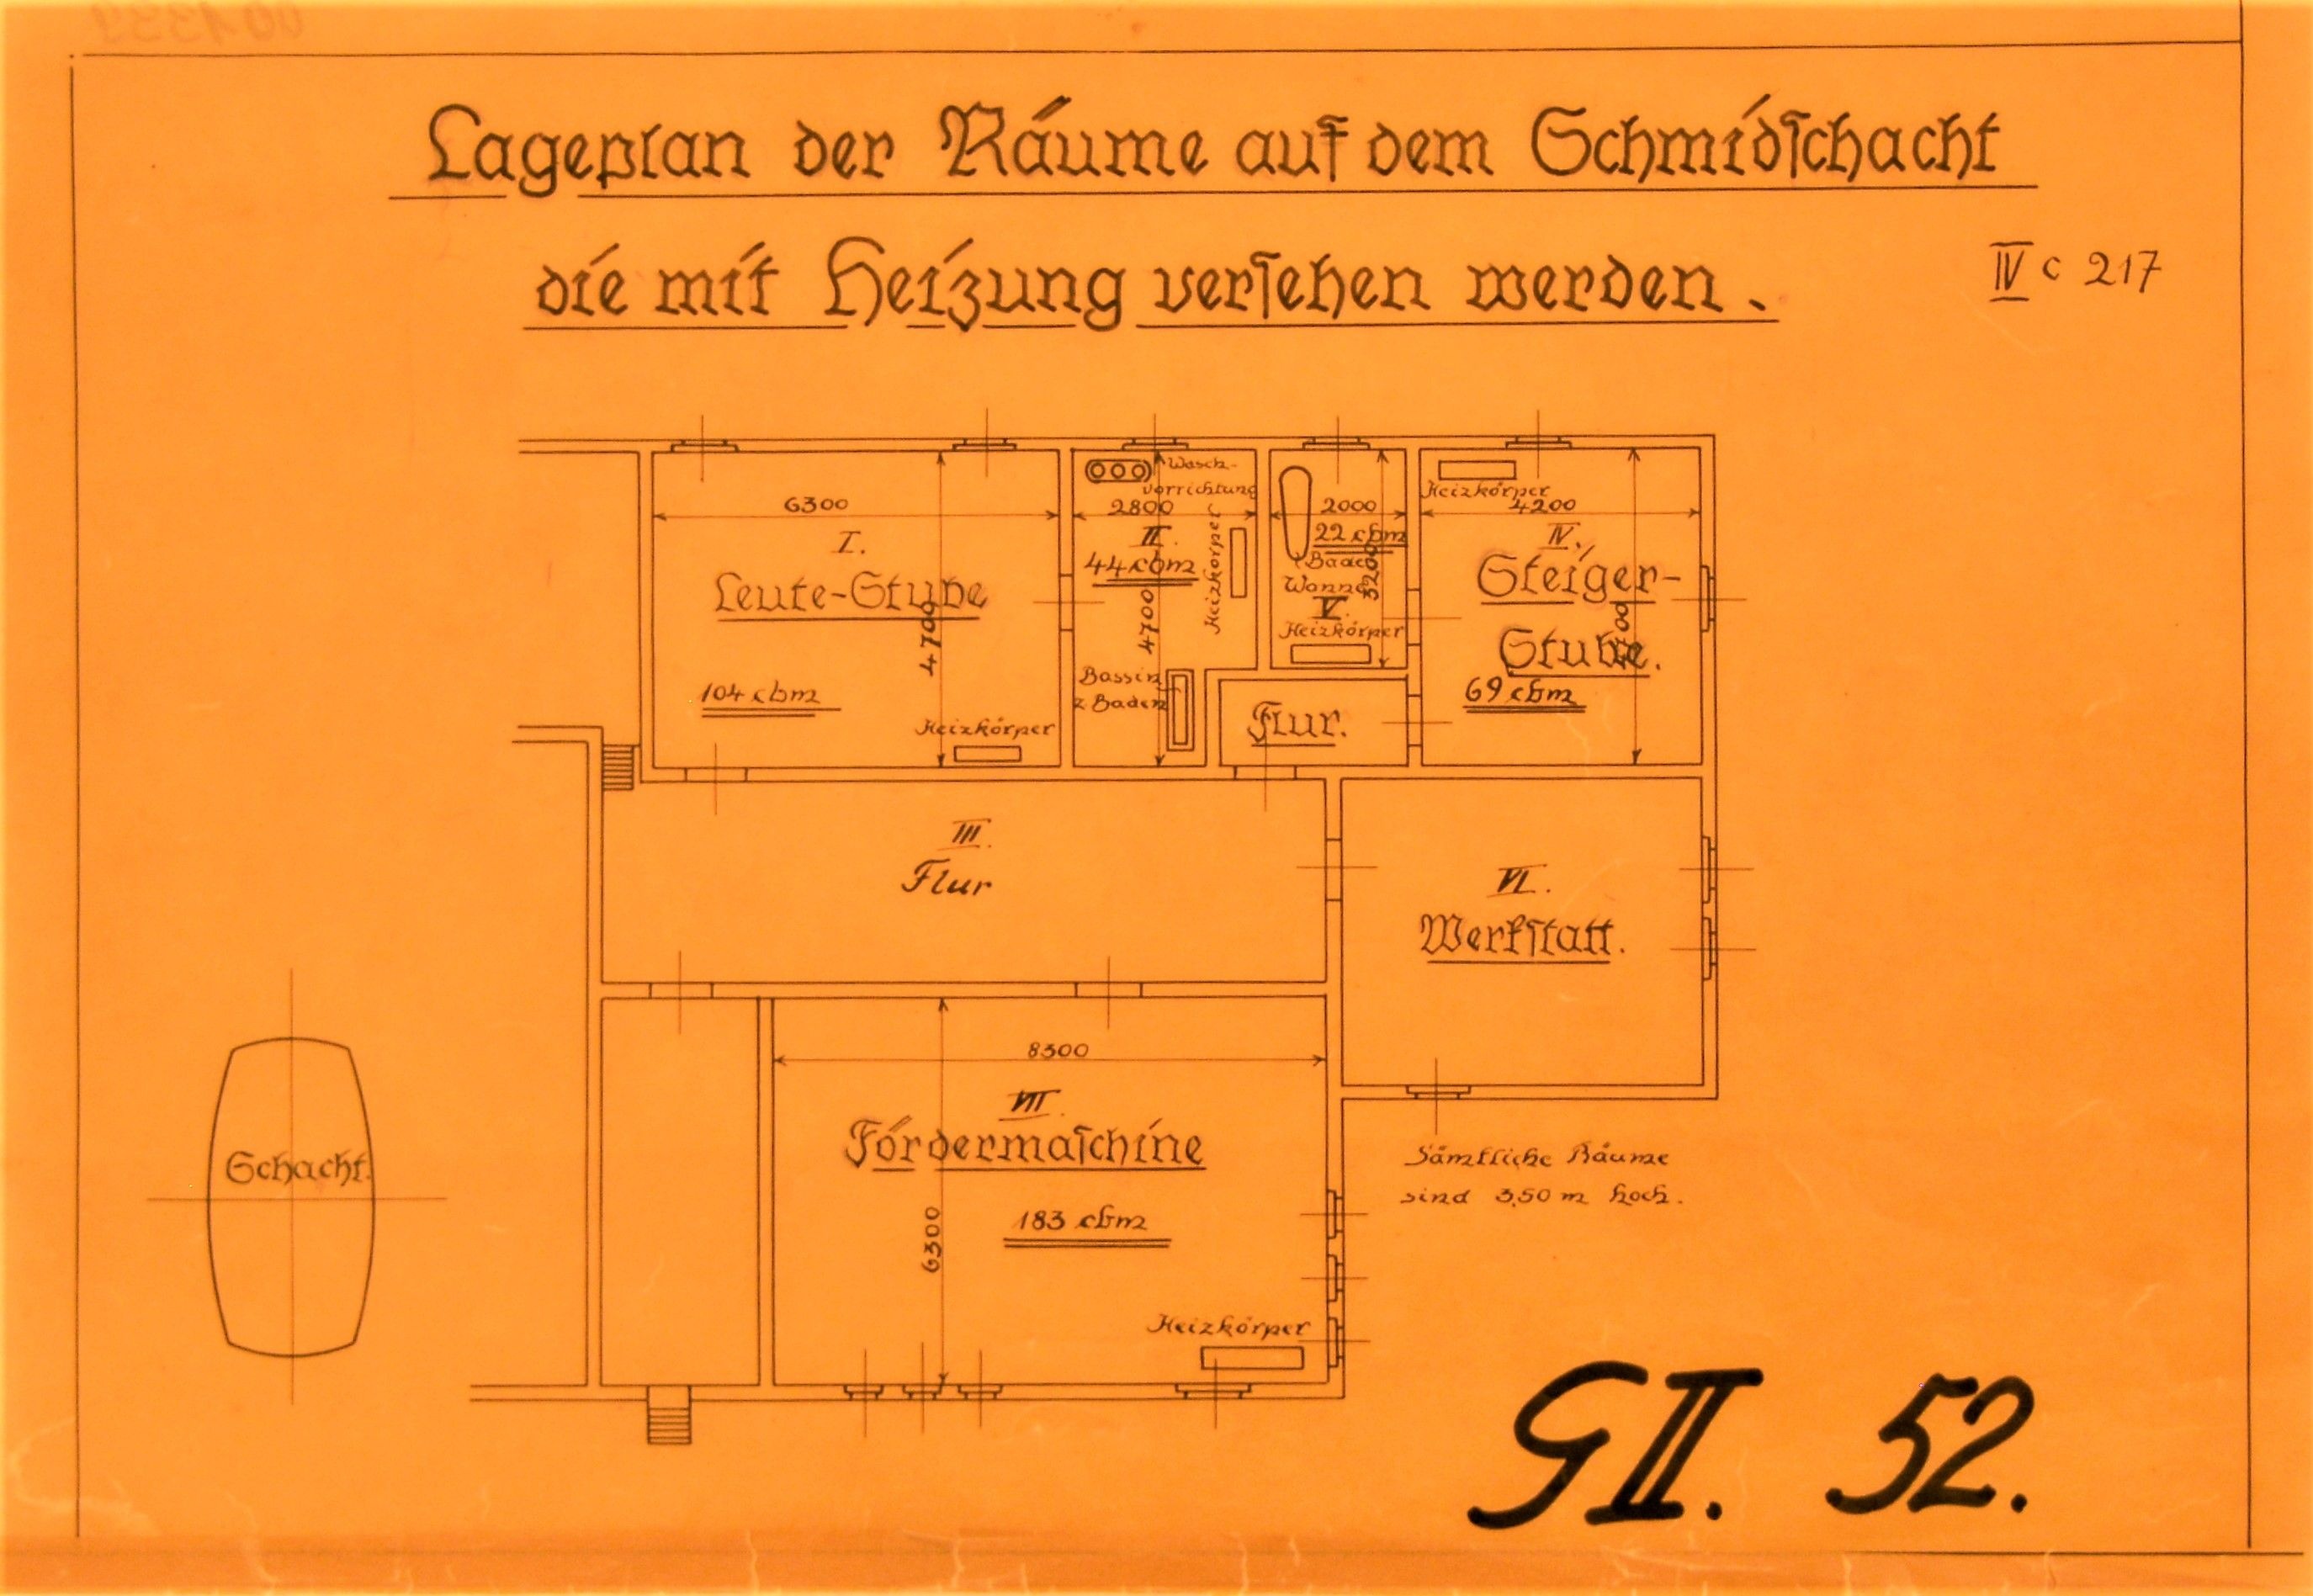 Lageplan der Räume auf dem Schmidschacht die mit Heizung versehen werden. (Mansfeld-Museum im Humboldt-Schloss CC BY-NC-SA)